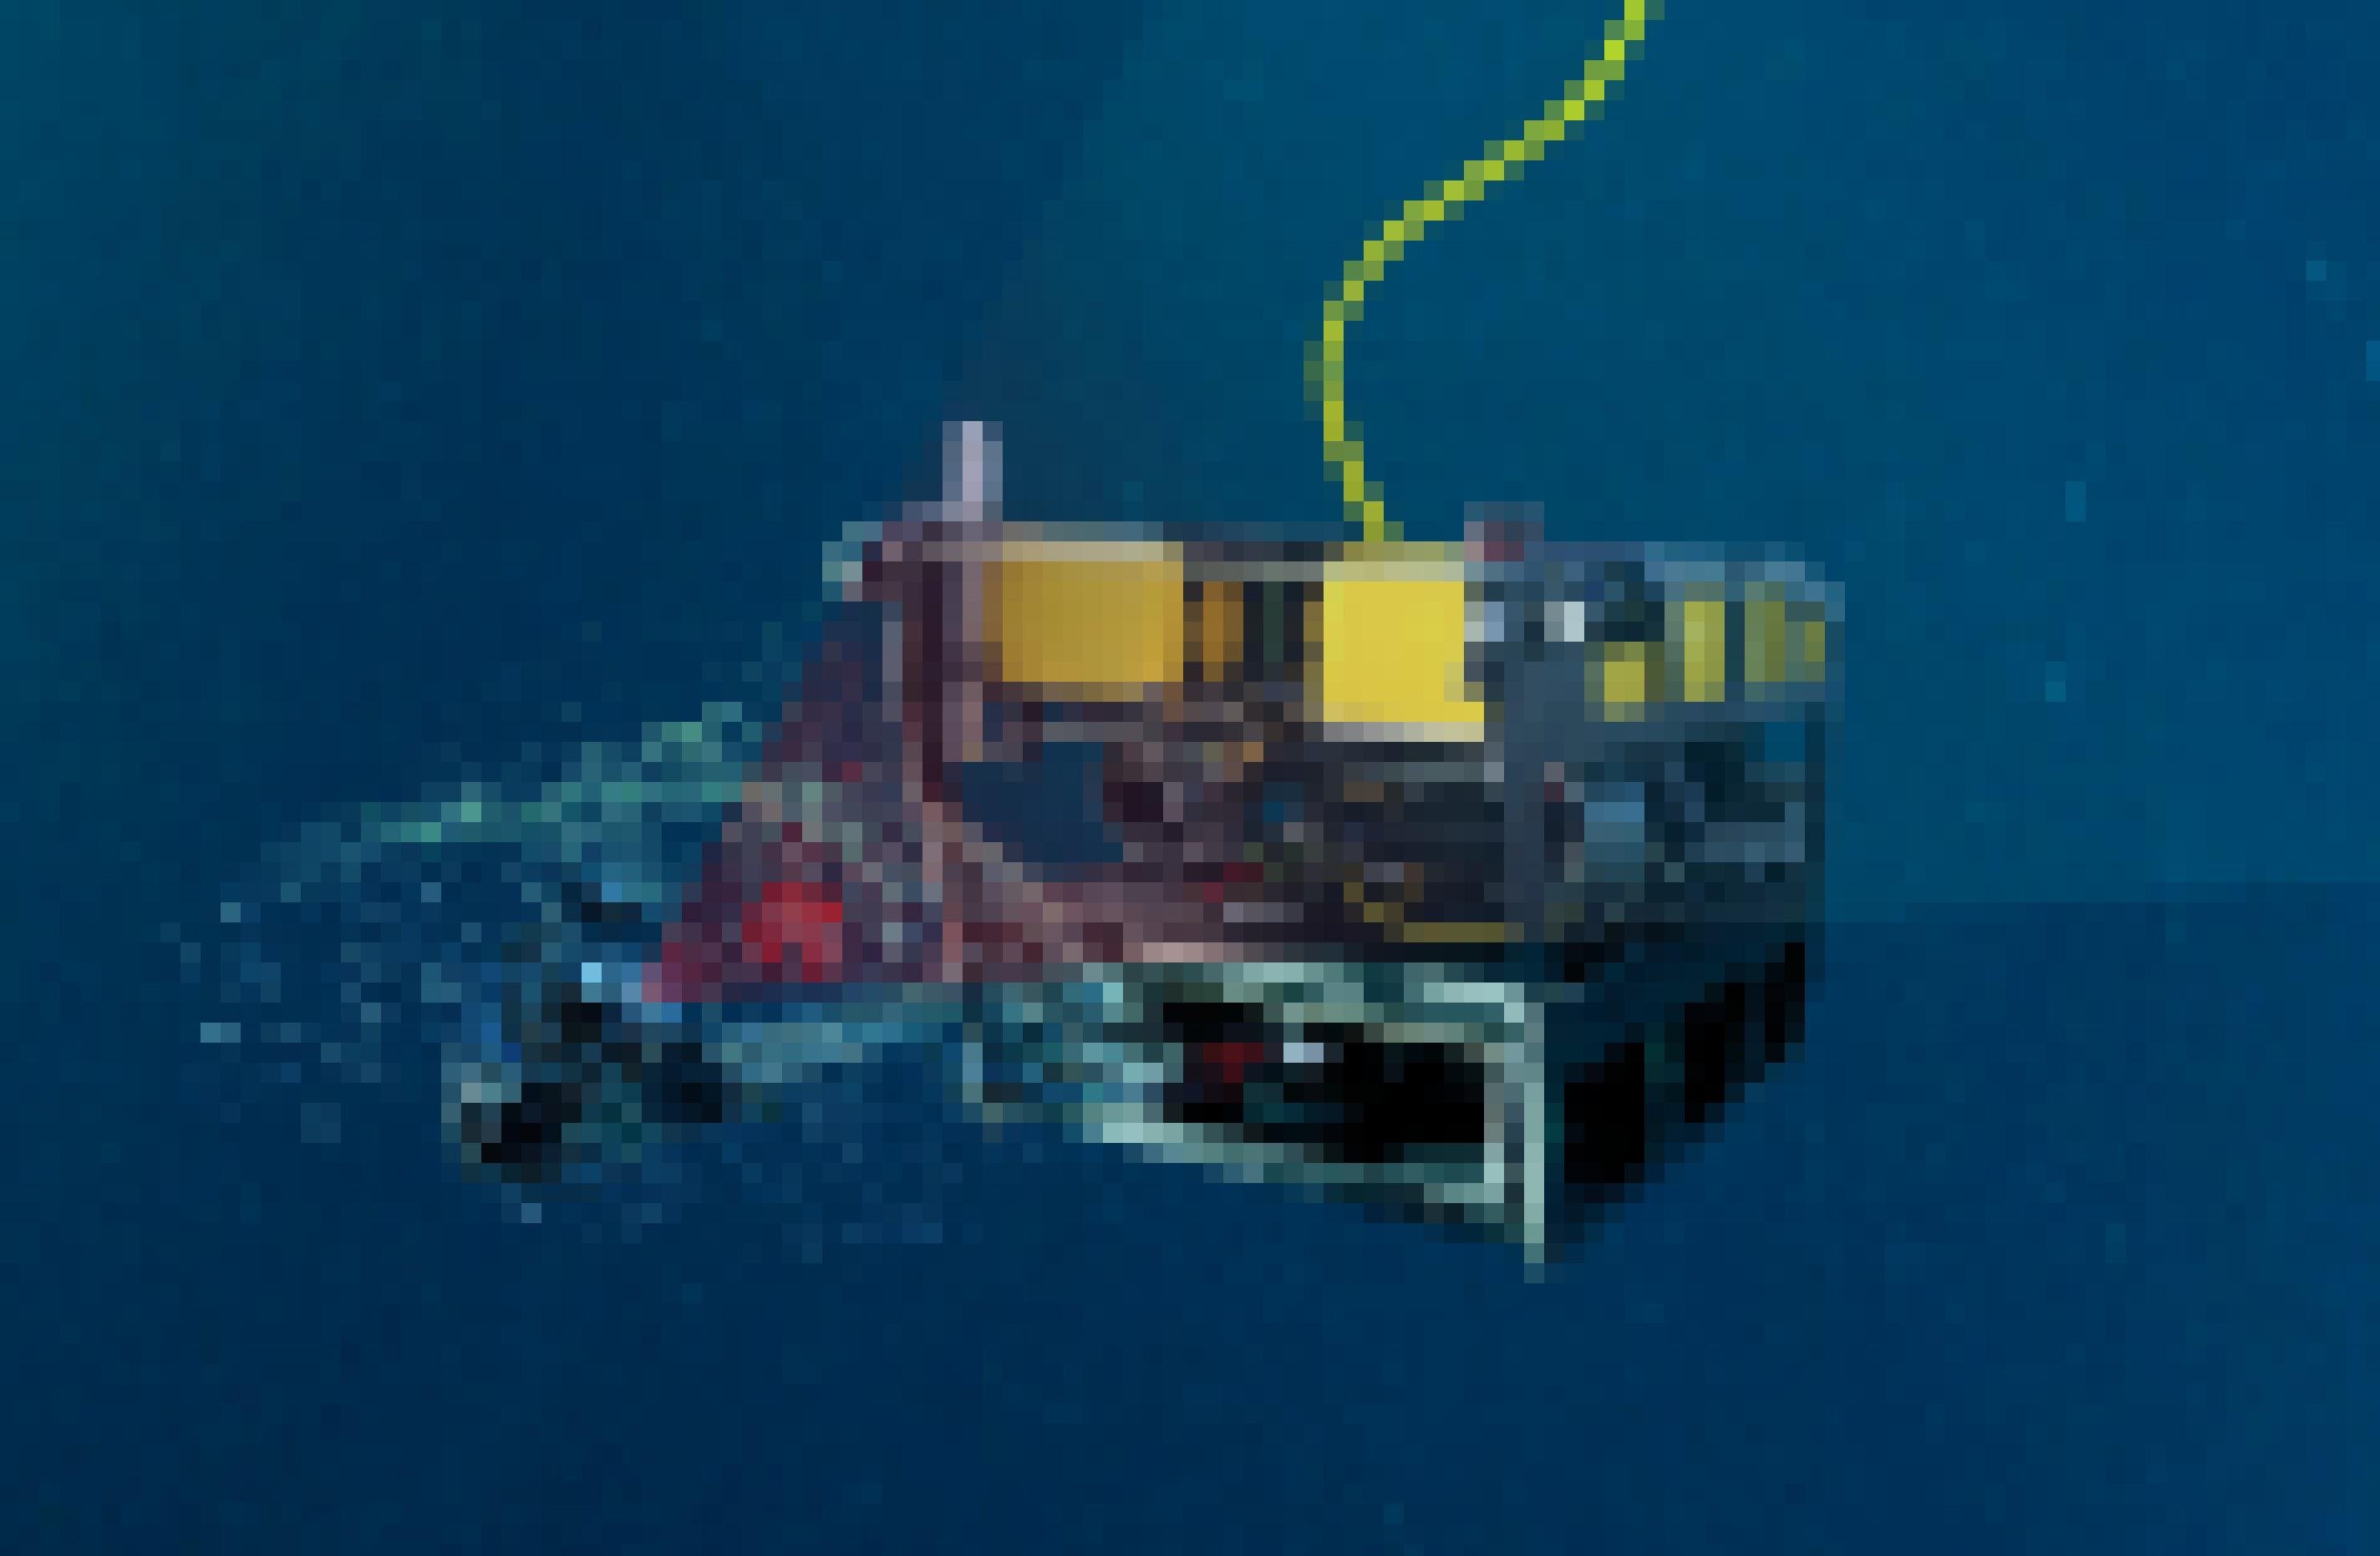 Diese Illustration zeigt MBARIs MiniROV, der ein DeepPIV-System trägtl. Es beleuchtet ein inneres Schleimhaus rot, das vom deutlich größeren zweiten Schleimhaus umgeben ist.